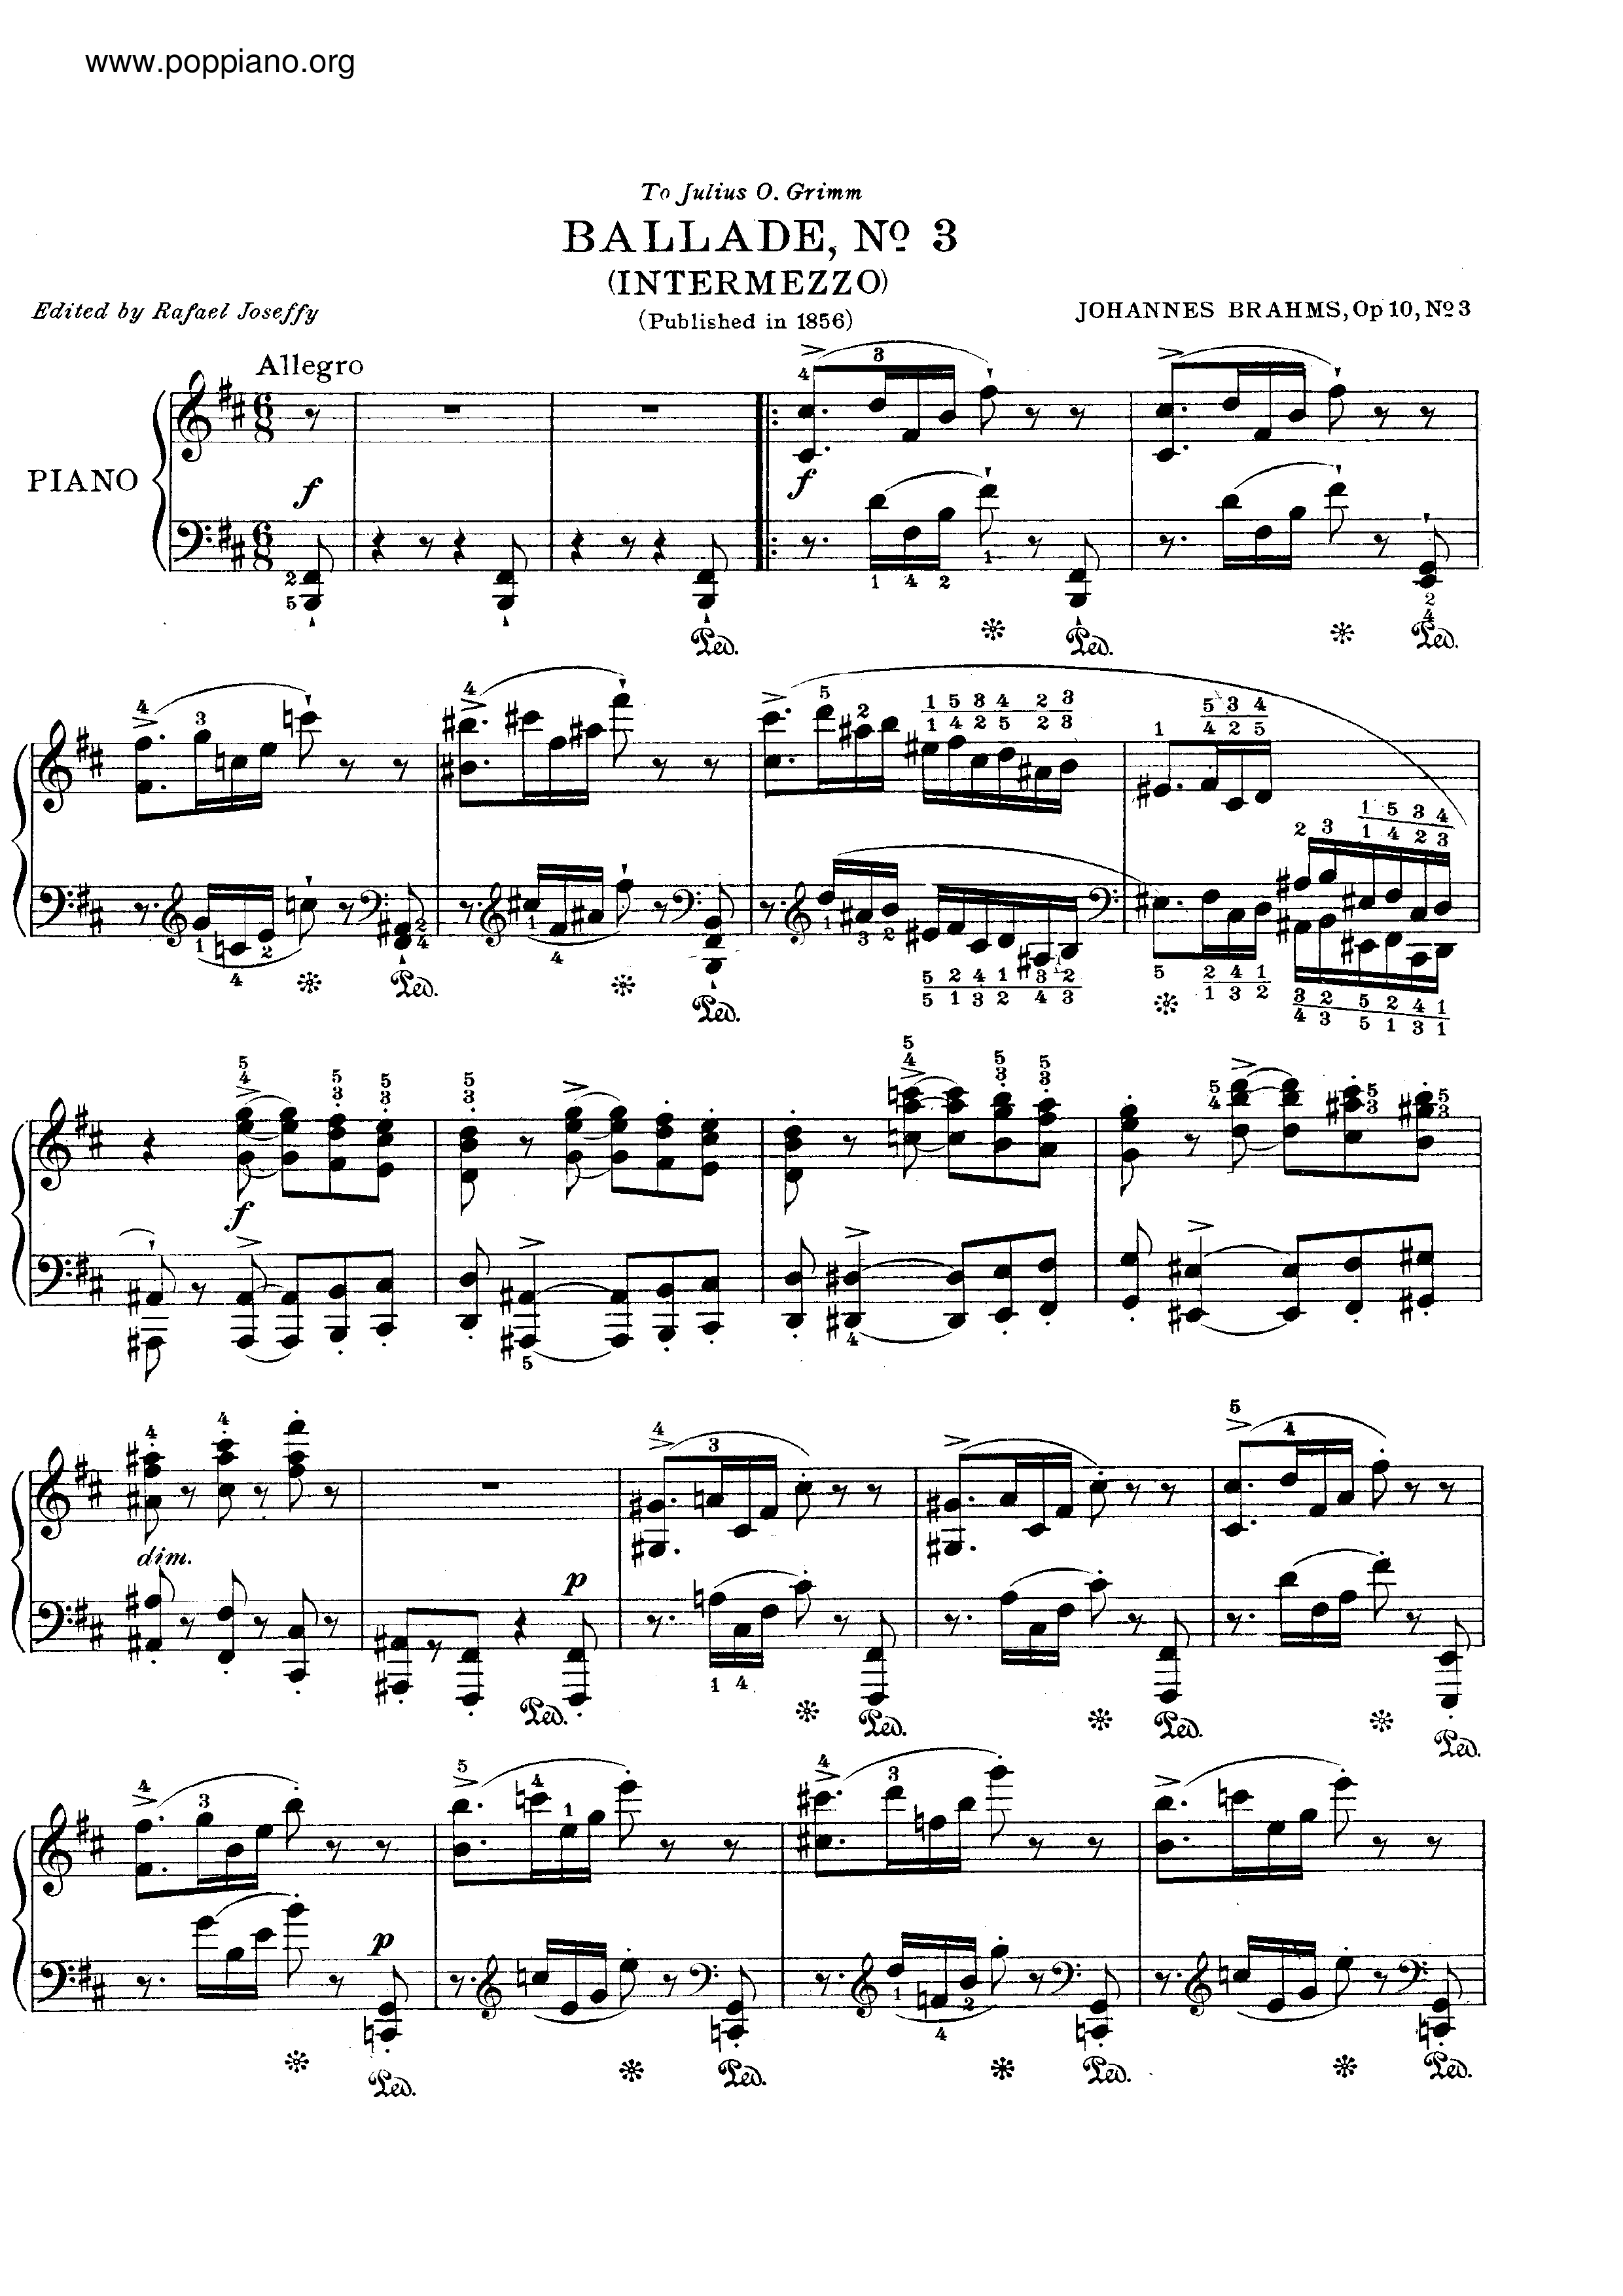 No. 3 in B minor. Intermezzo. Allegro Score